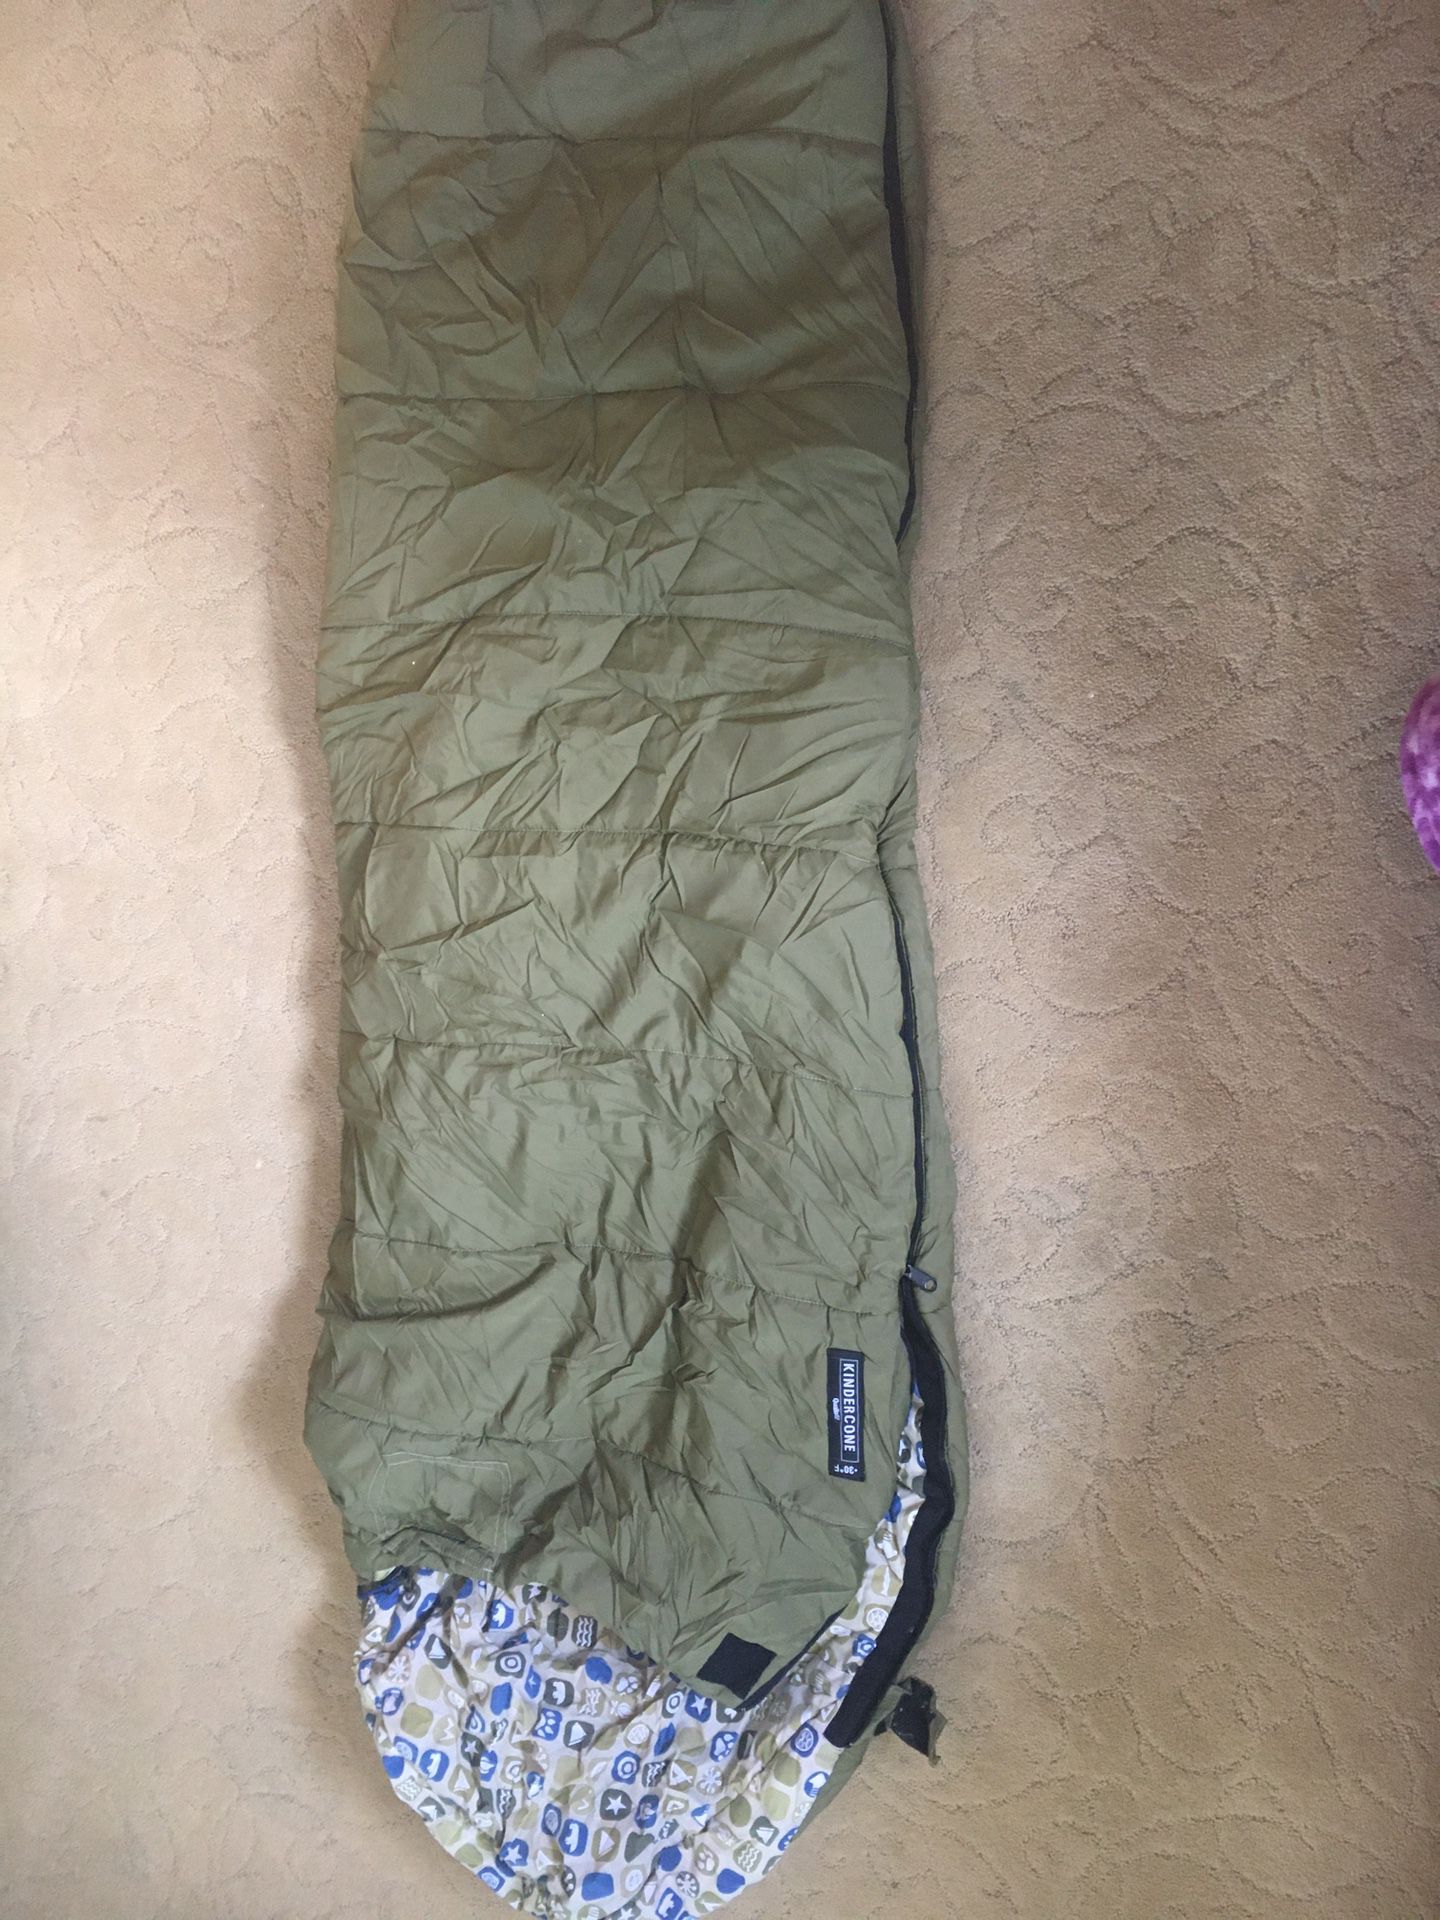 Kids REI Kindercone sleeping bag—green